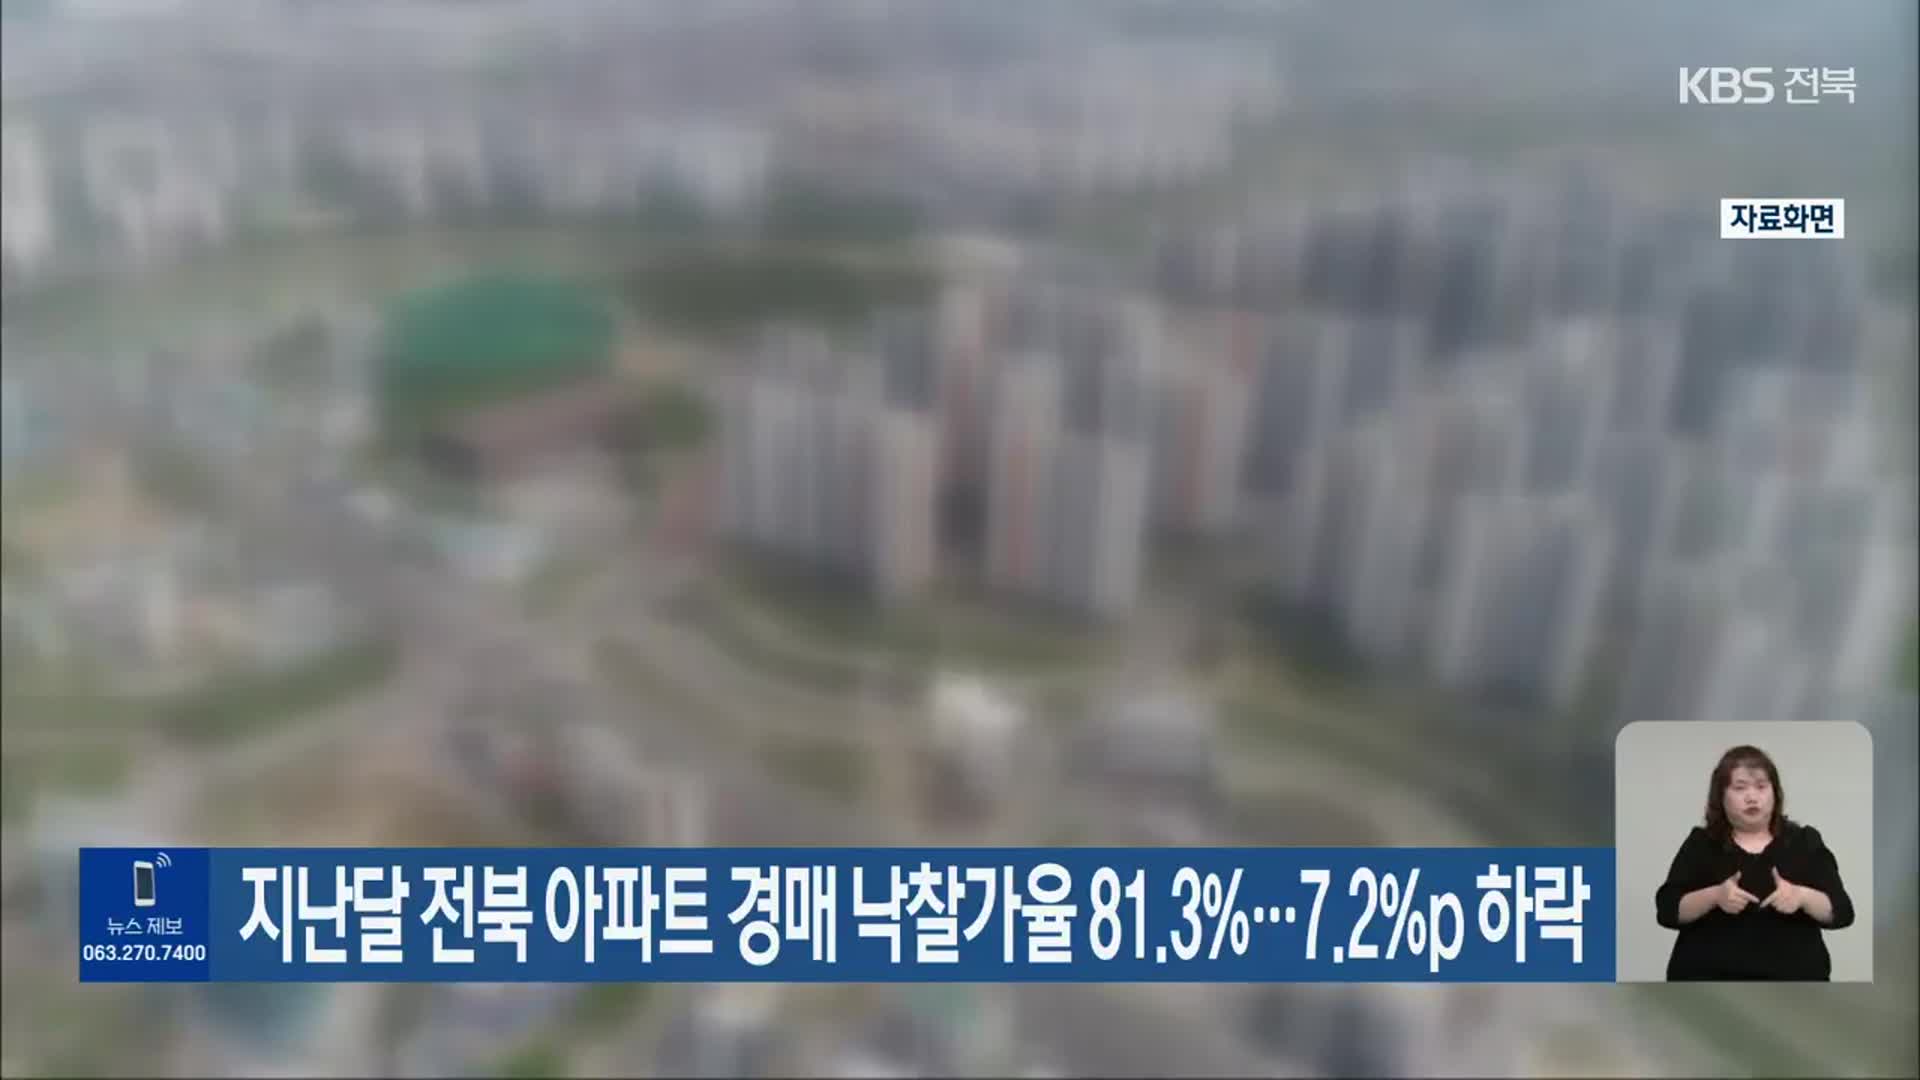 지난달 전북 아파트 경매 낙찰가율 81.3%…7.2%p 하락